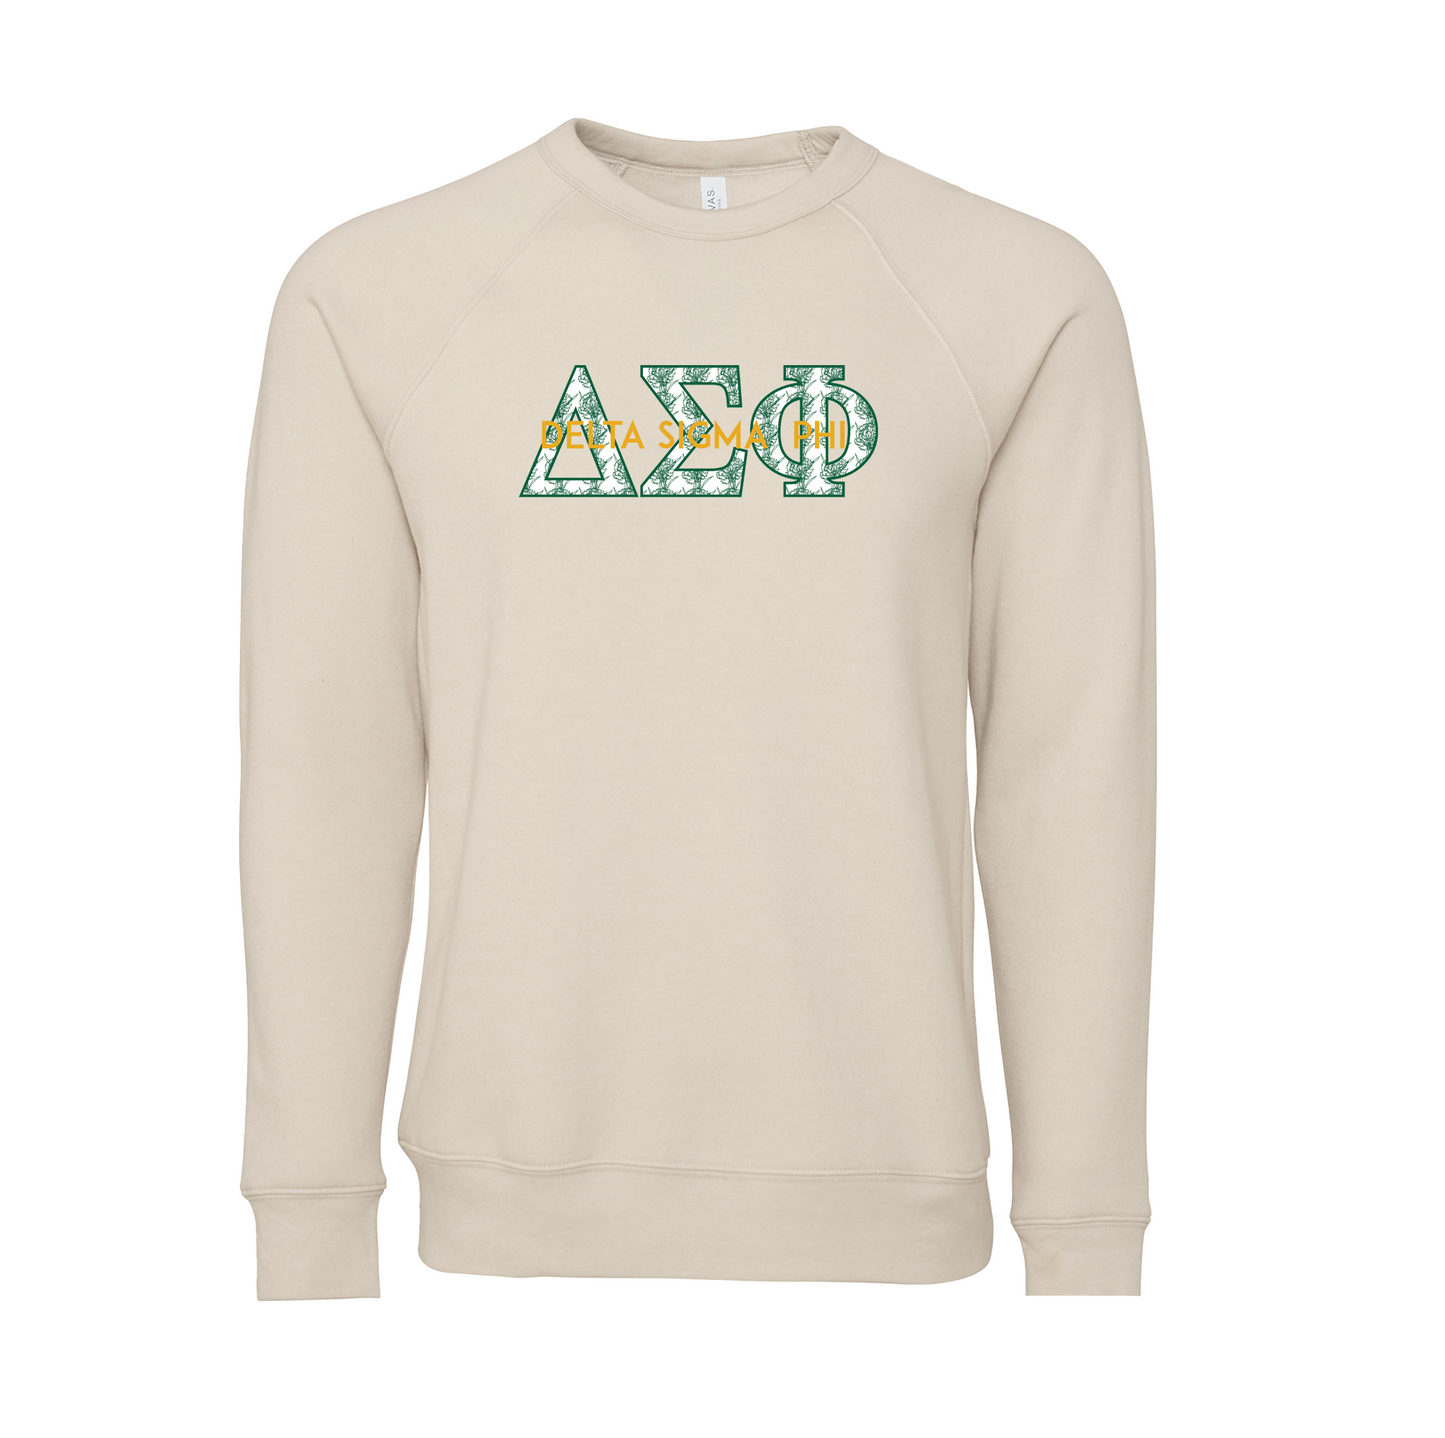 Delta Sigma Phi Applique Letters Crewneck Sweatshirt